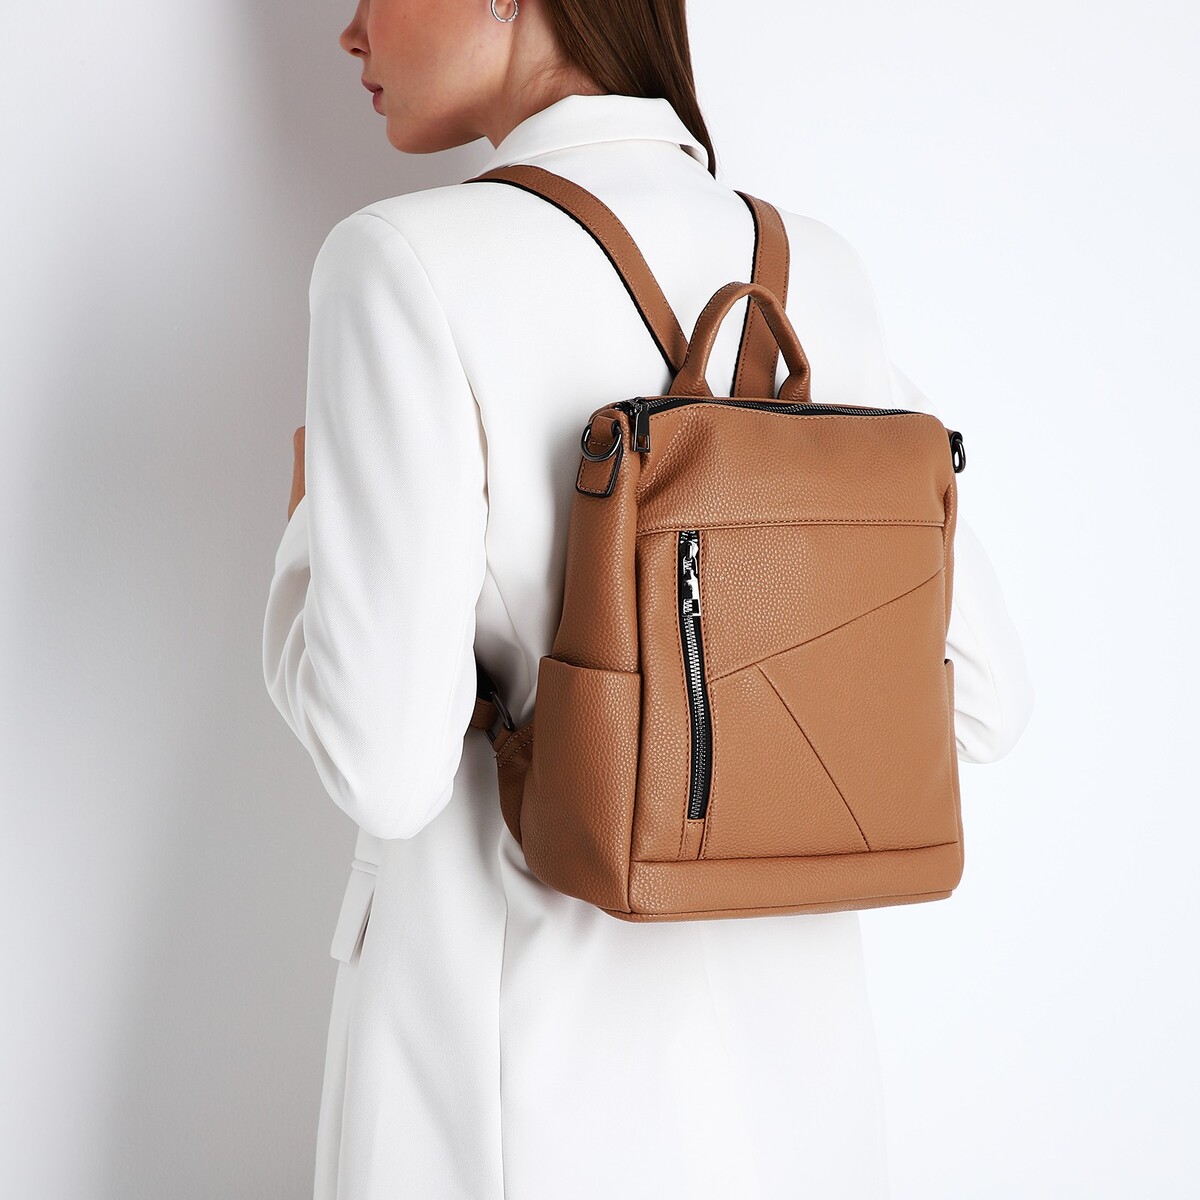 Рюкзак женский из искусственной кожи на молнии, 4 кармана, цвет коричневый рюкзак женский из искусственной кожи на молнии 4 кармана сумка